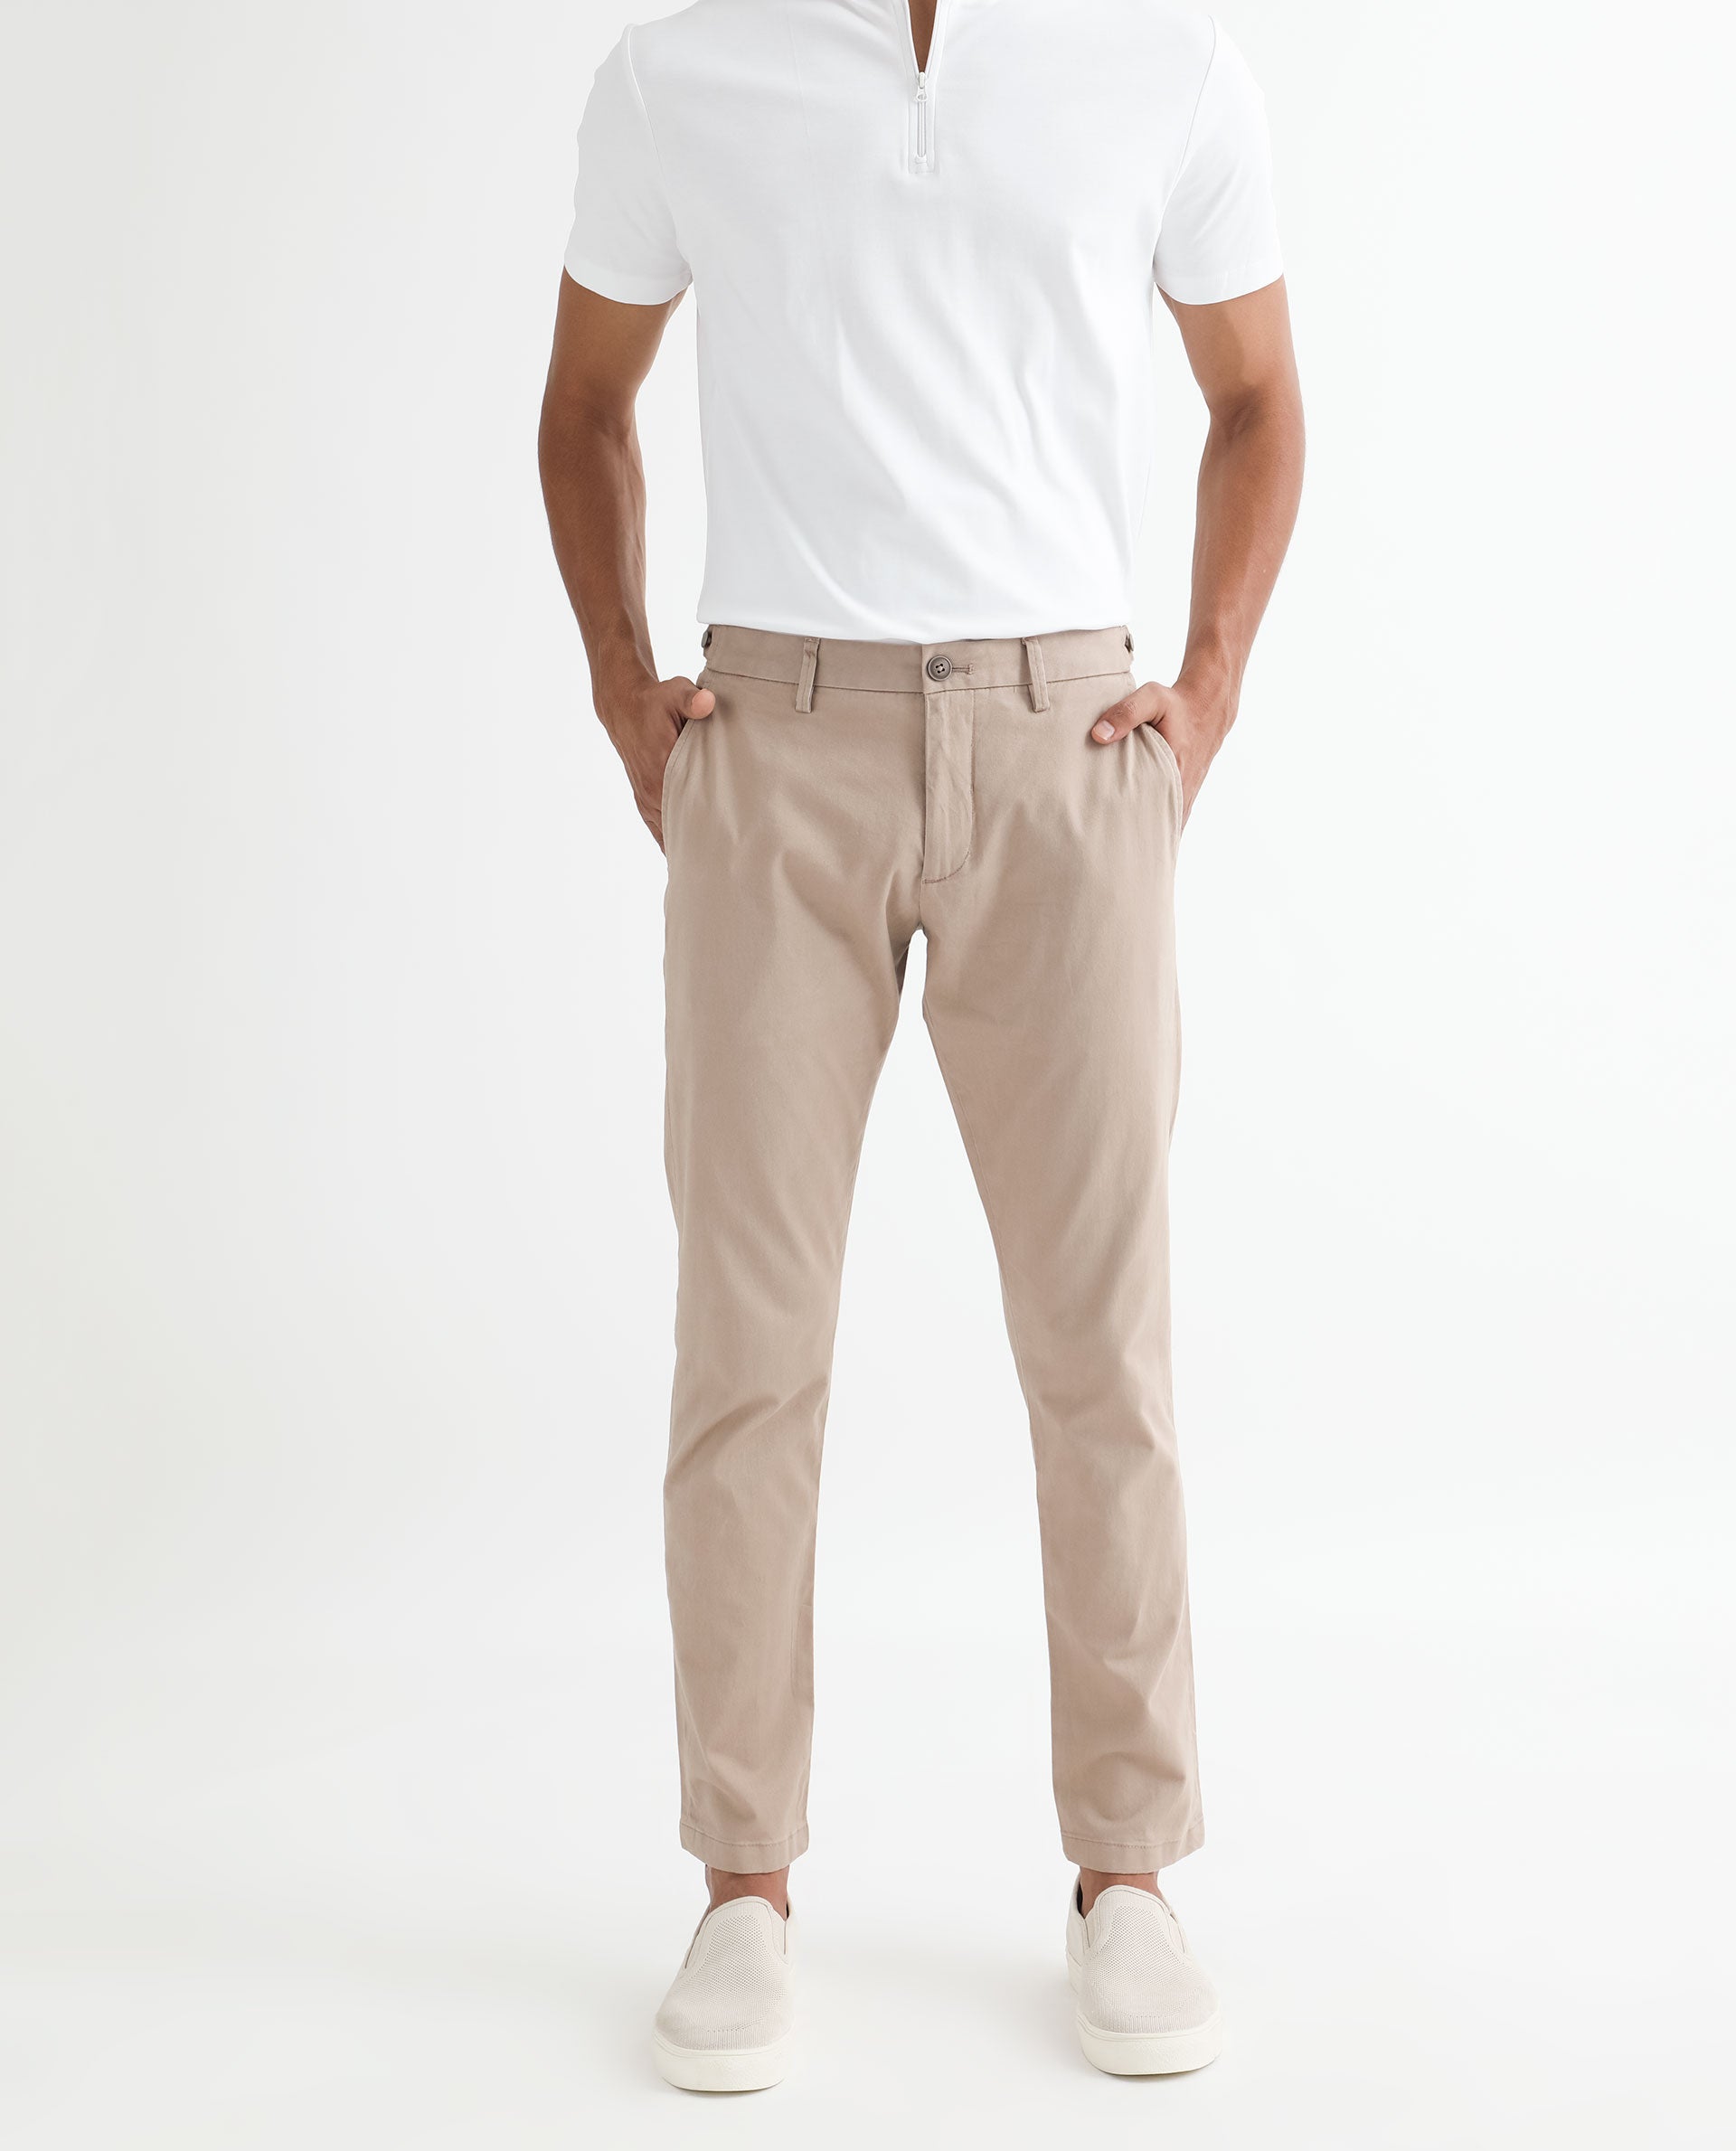 Men's Trousers - Buy Designer Trousers for Men Online